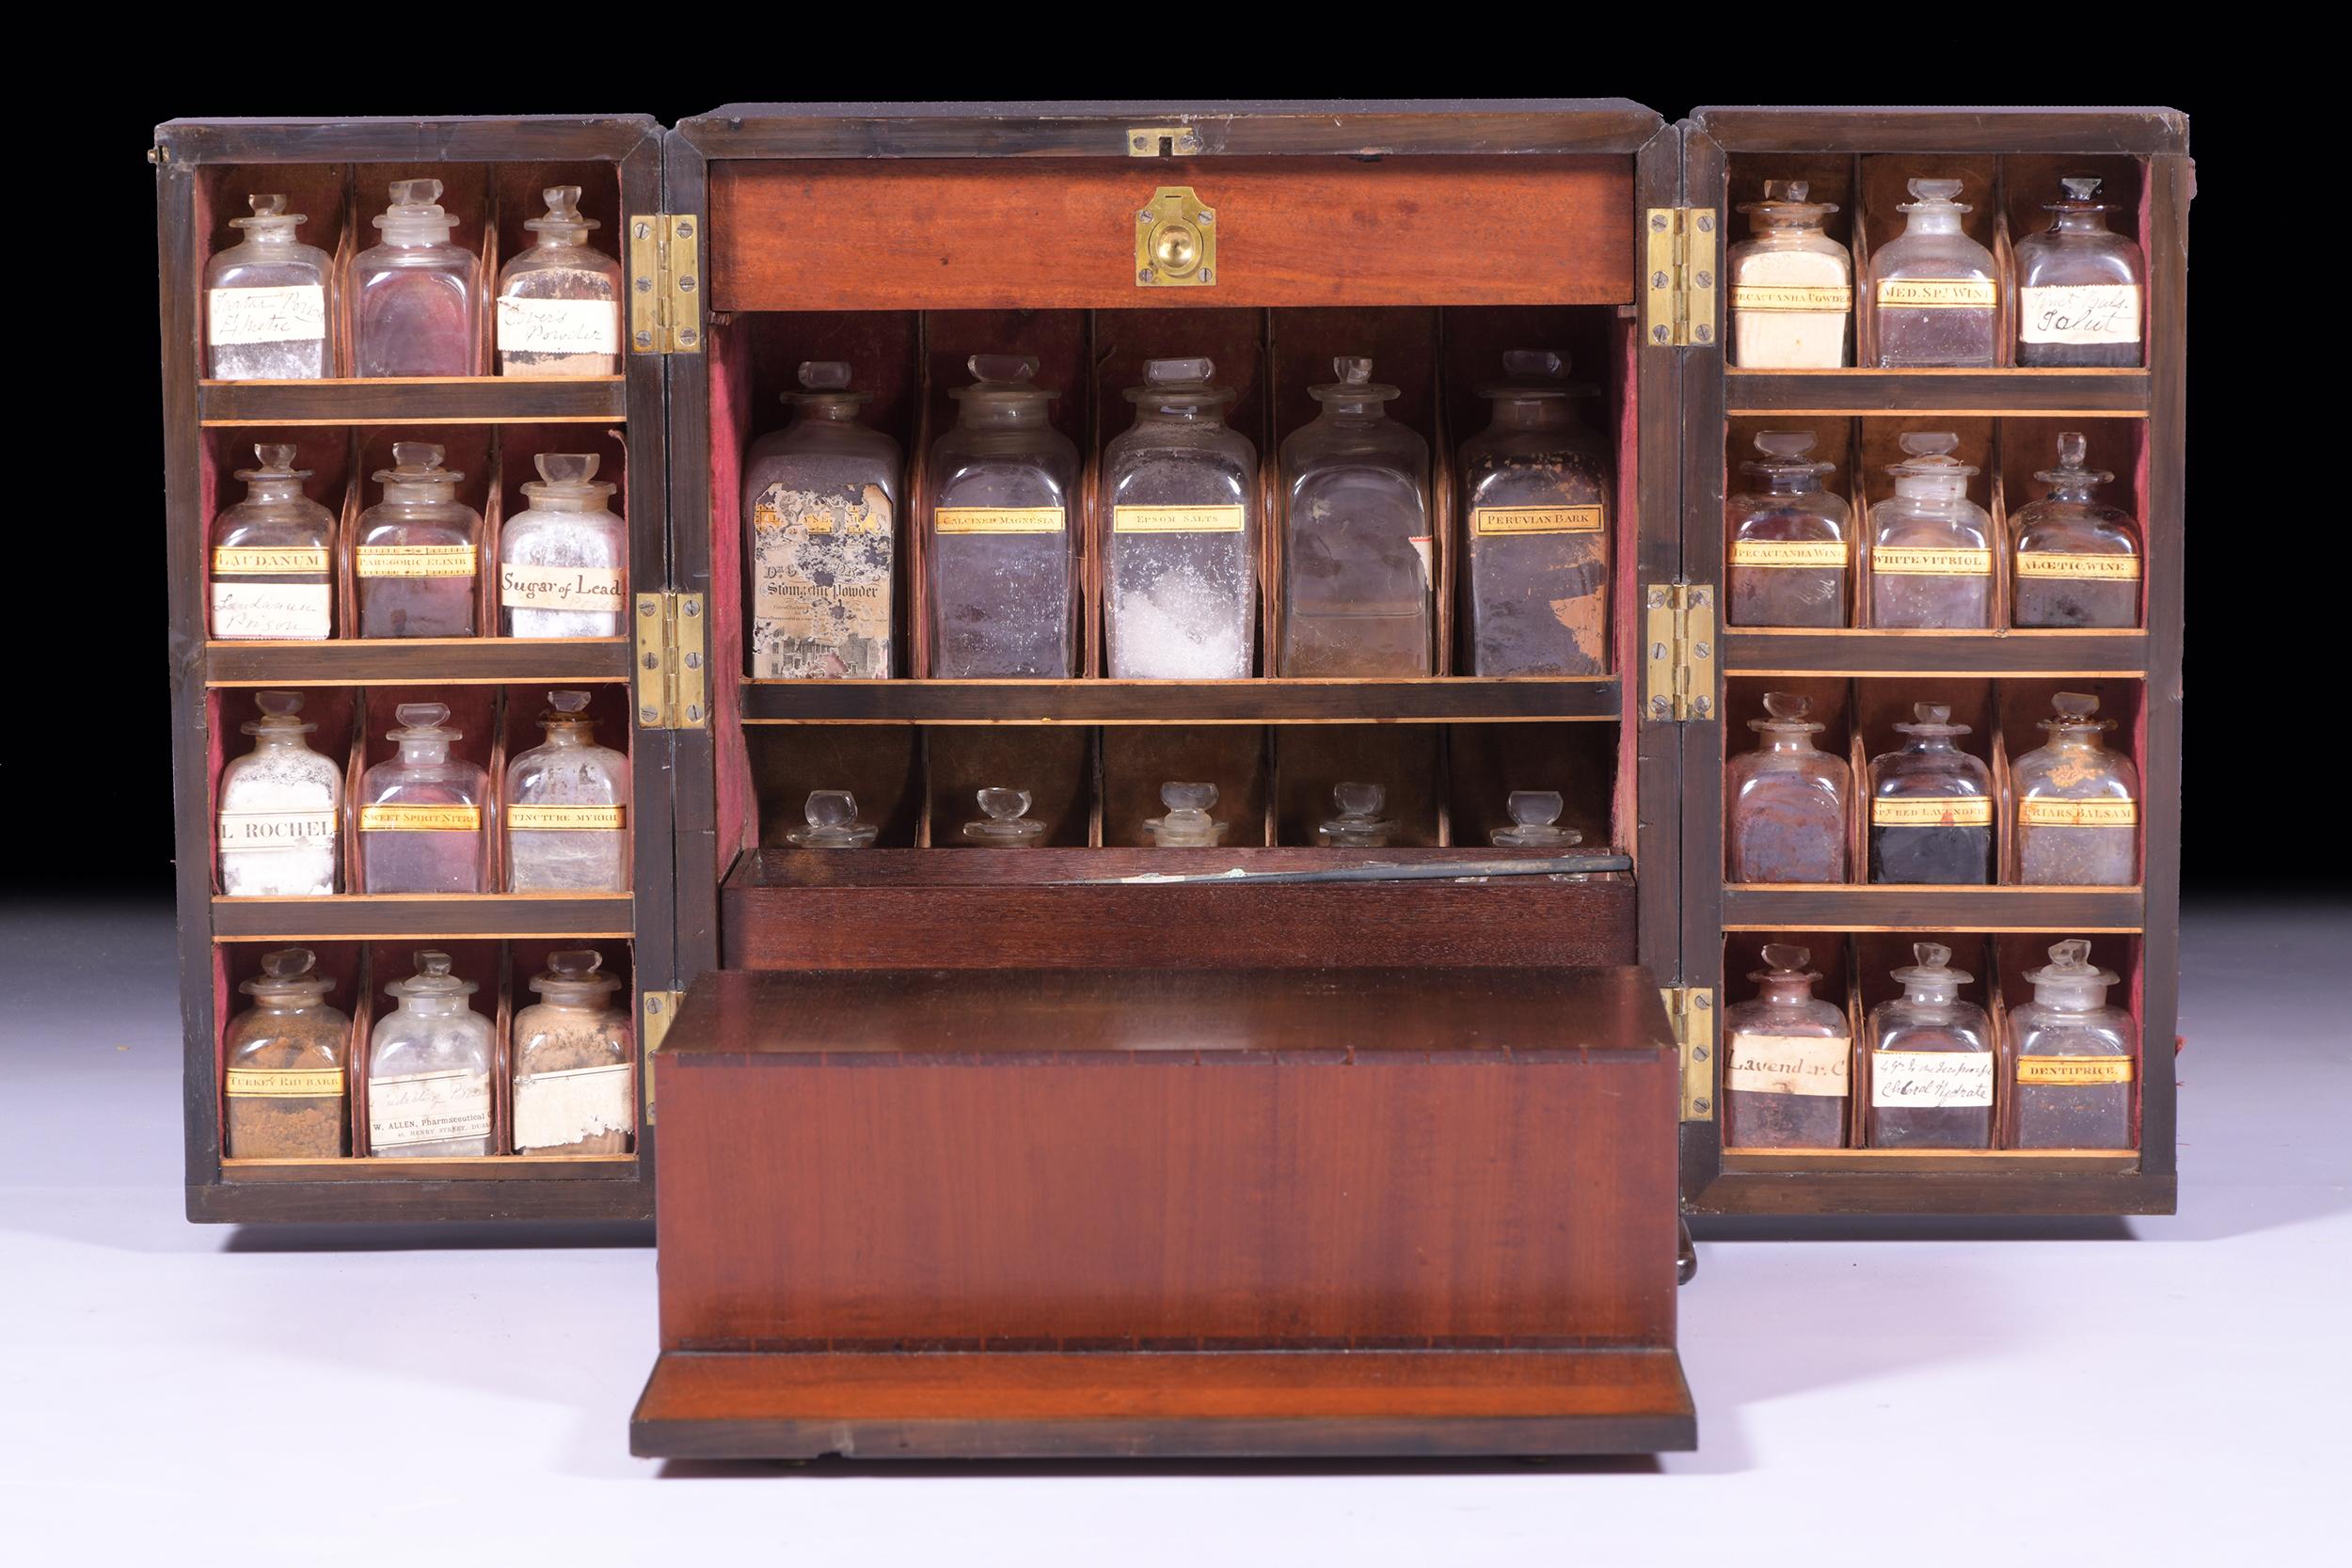 Eine außergewöhnliche frühen 19. Jahrhundert Mahagoni Schrank Apotheker Medizin Brust mit Messing Träger Griffe zu jeder Seite, die durch die Doppeltüren öffnet, um eine Anordnung von Flaschen zu offenbaren, mit Etiketten und Inhalt, teilweise voll